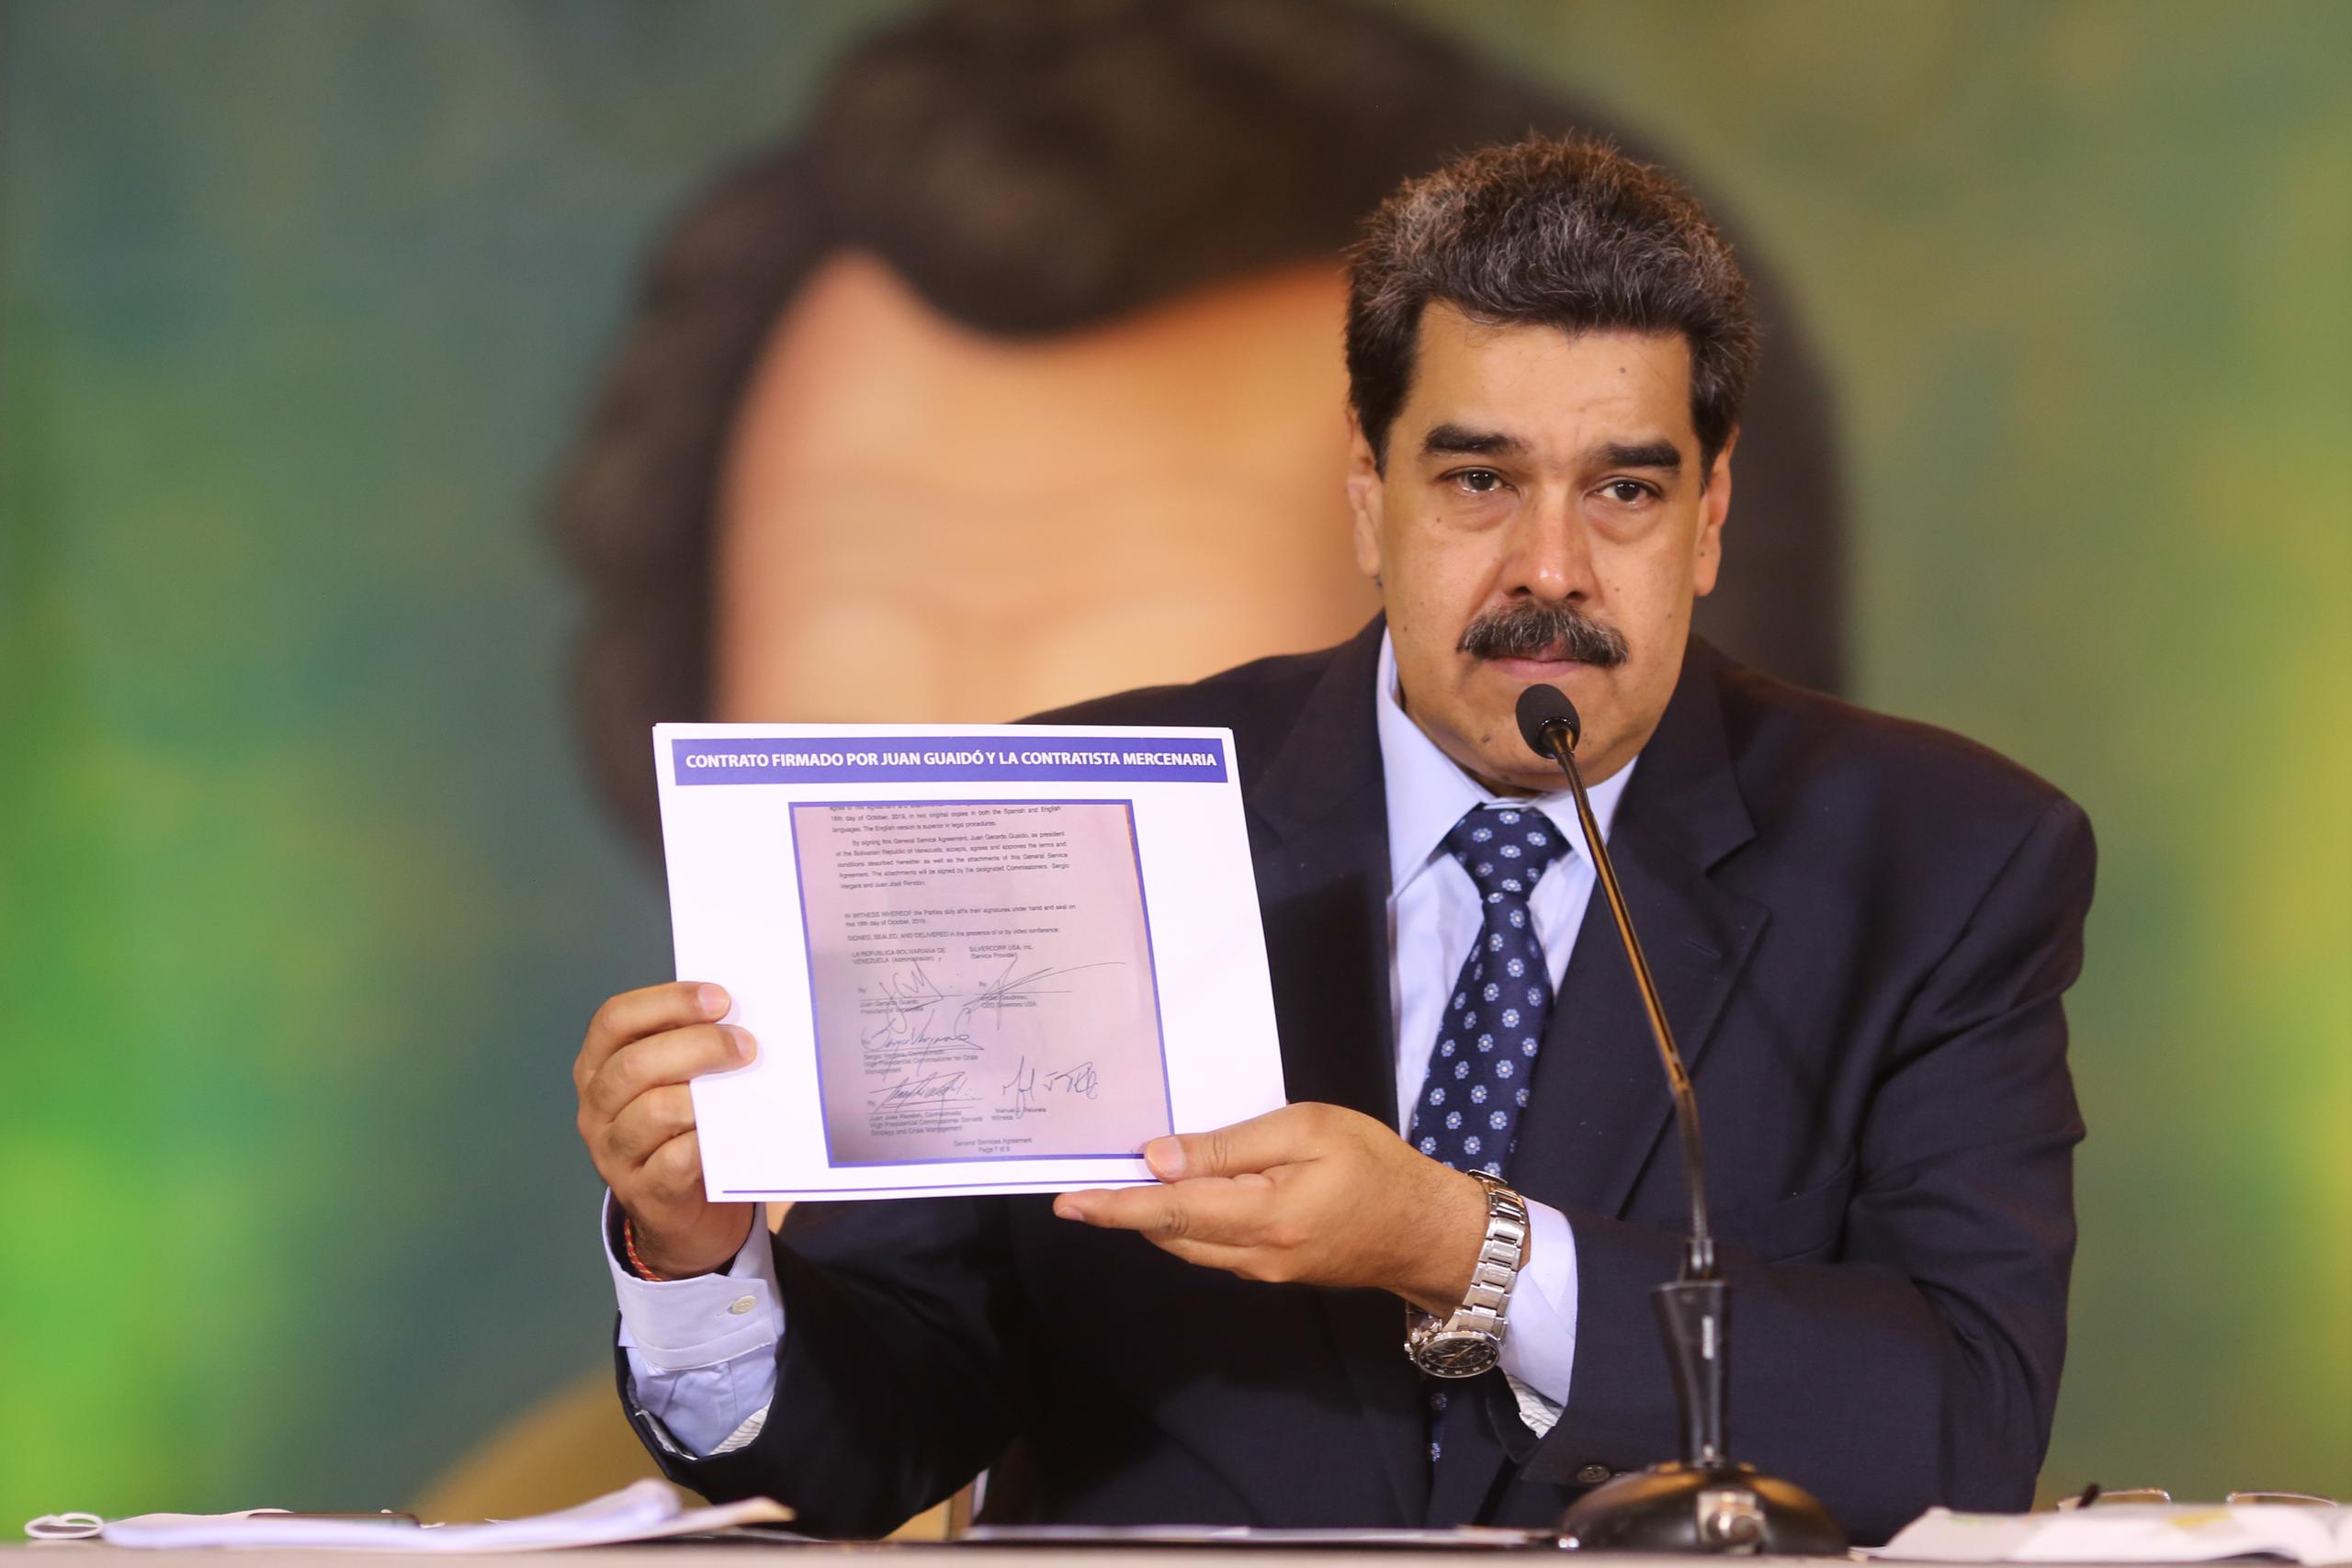 Nicolás Maduro acusa Juan Guaidó de ser el autor intelectual de un operativo militar para derrocarlo, mientras sostiene una copia de un acuerdo por escrito que supuestamente tiene la firma del líder opositor, como evidencia